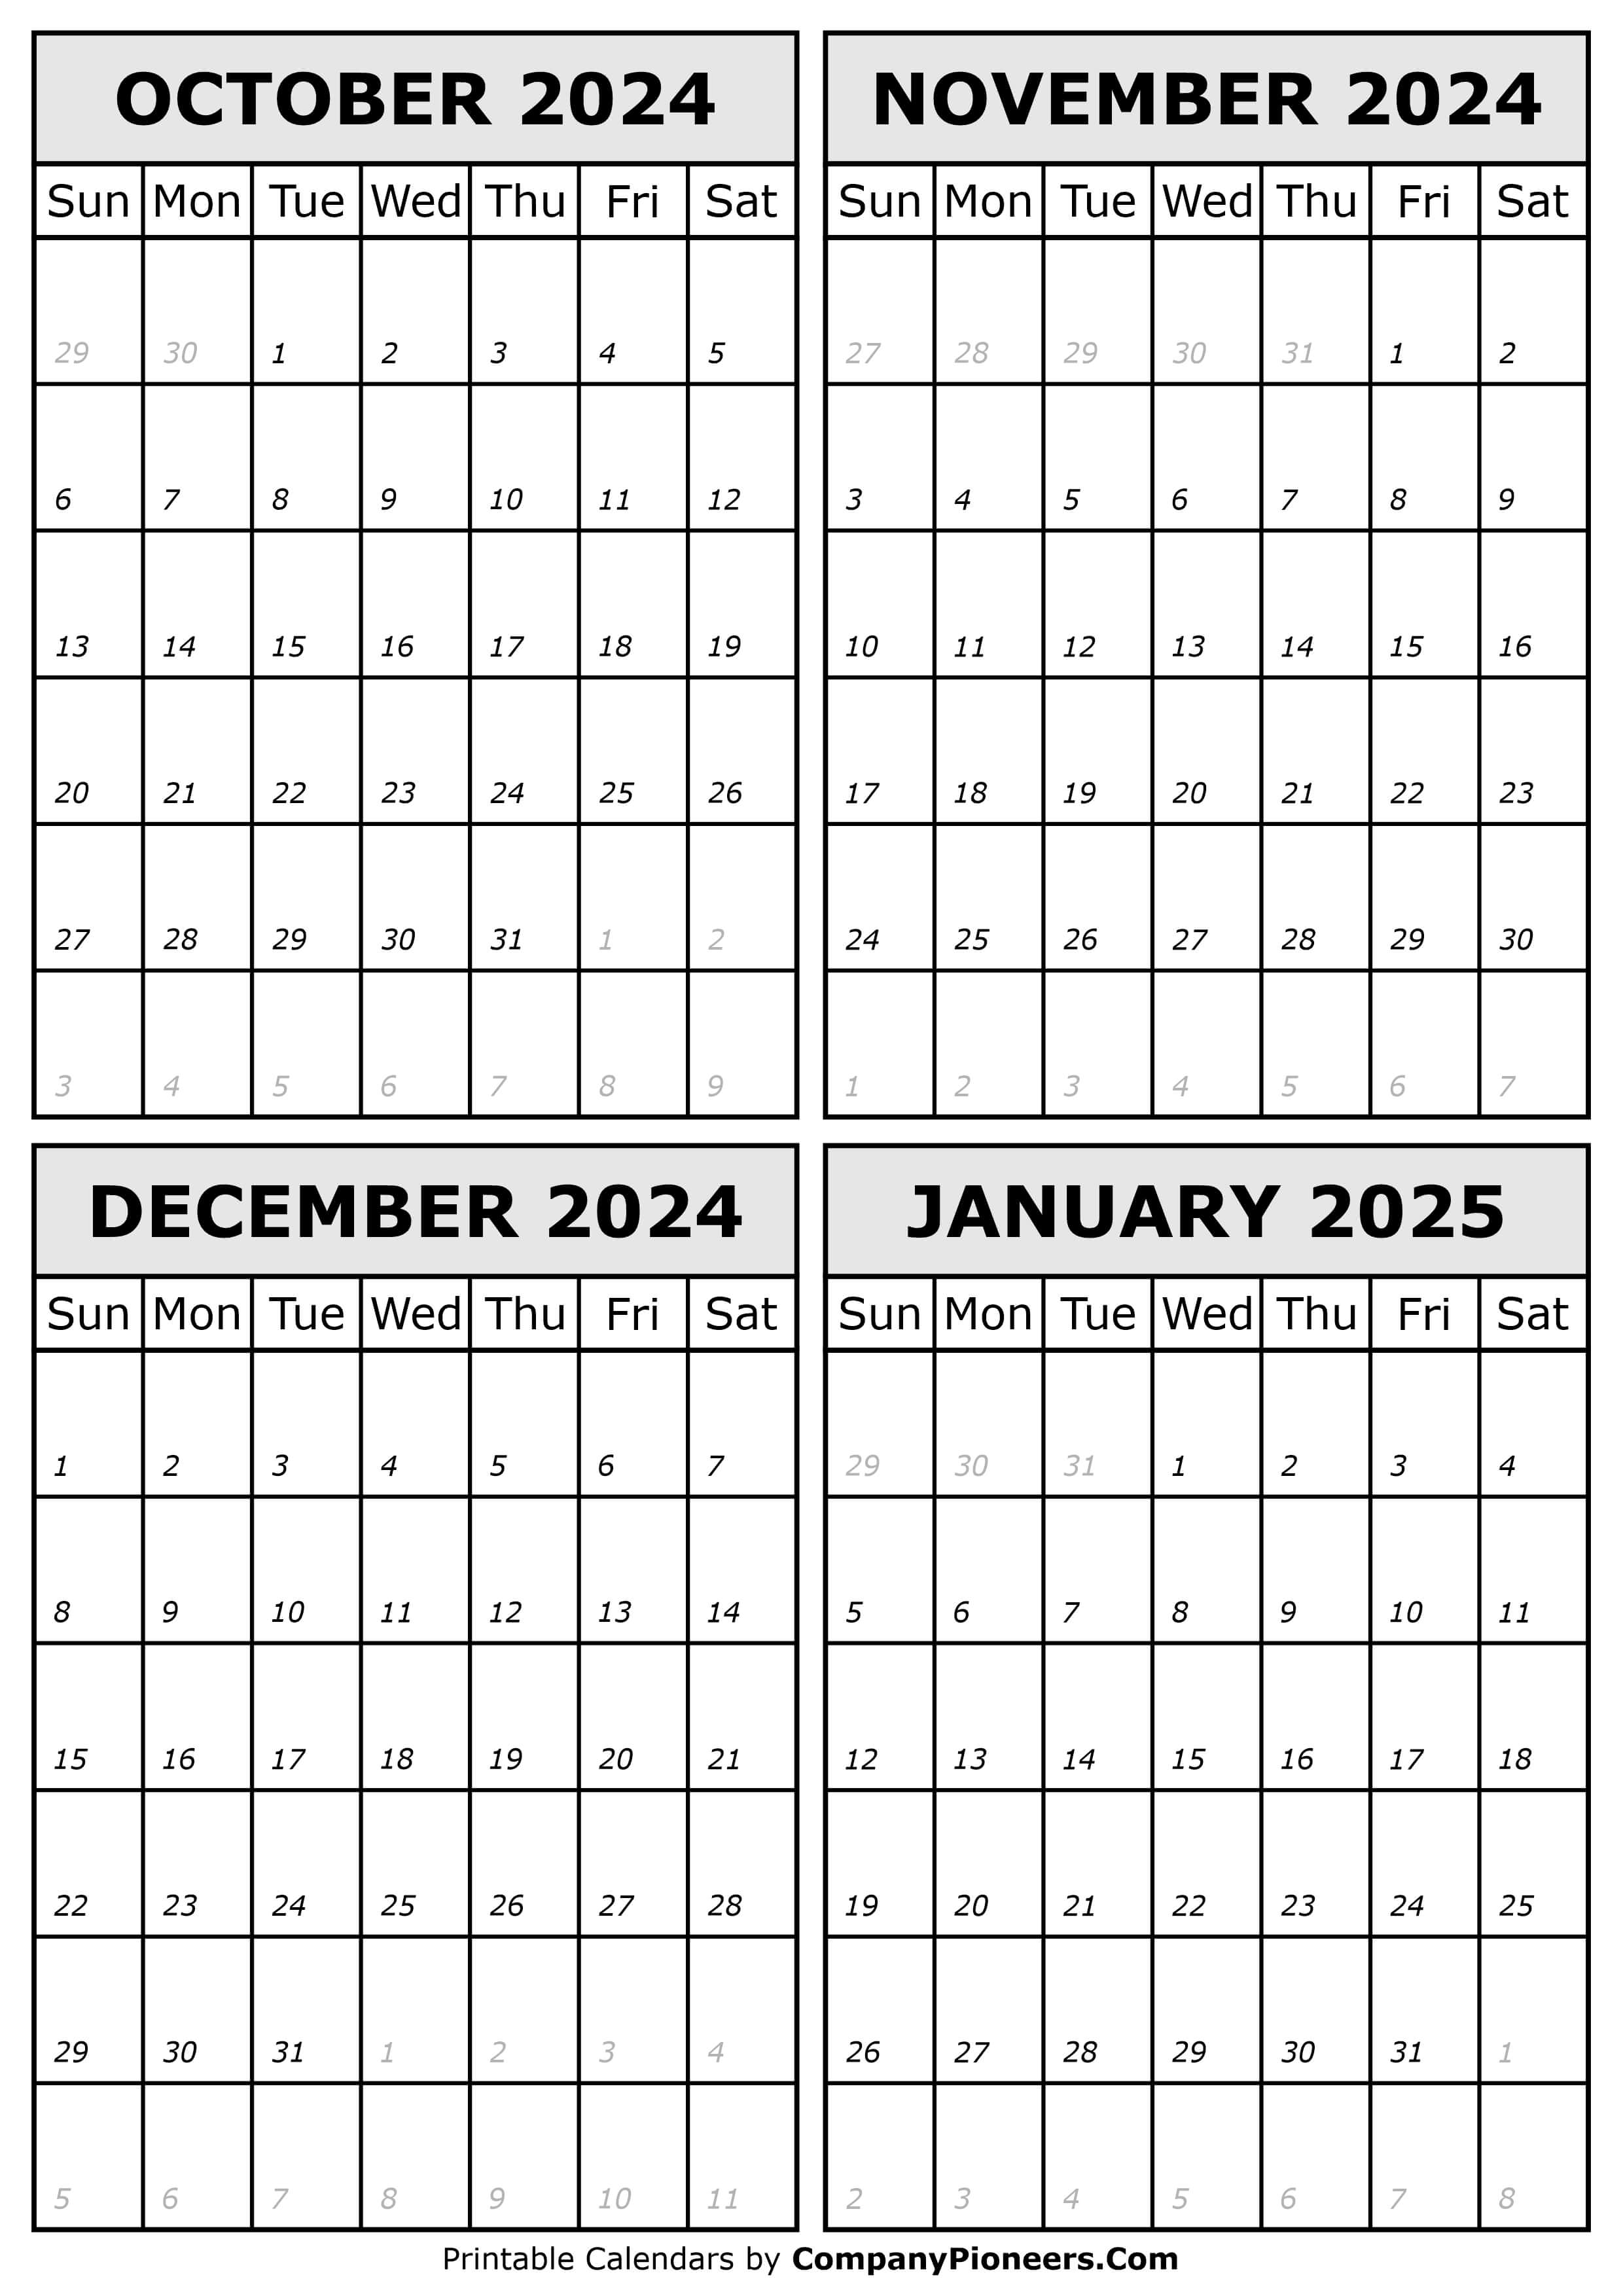 October 2024 to January 2025 Calendar Template